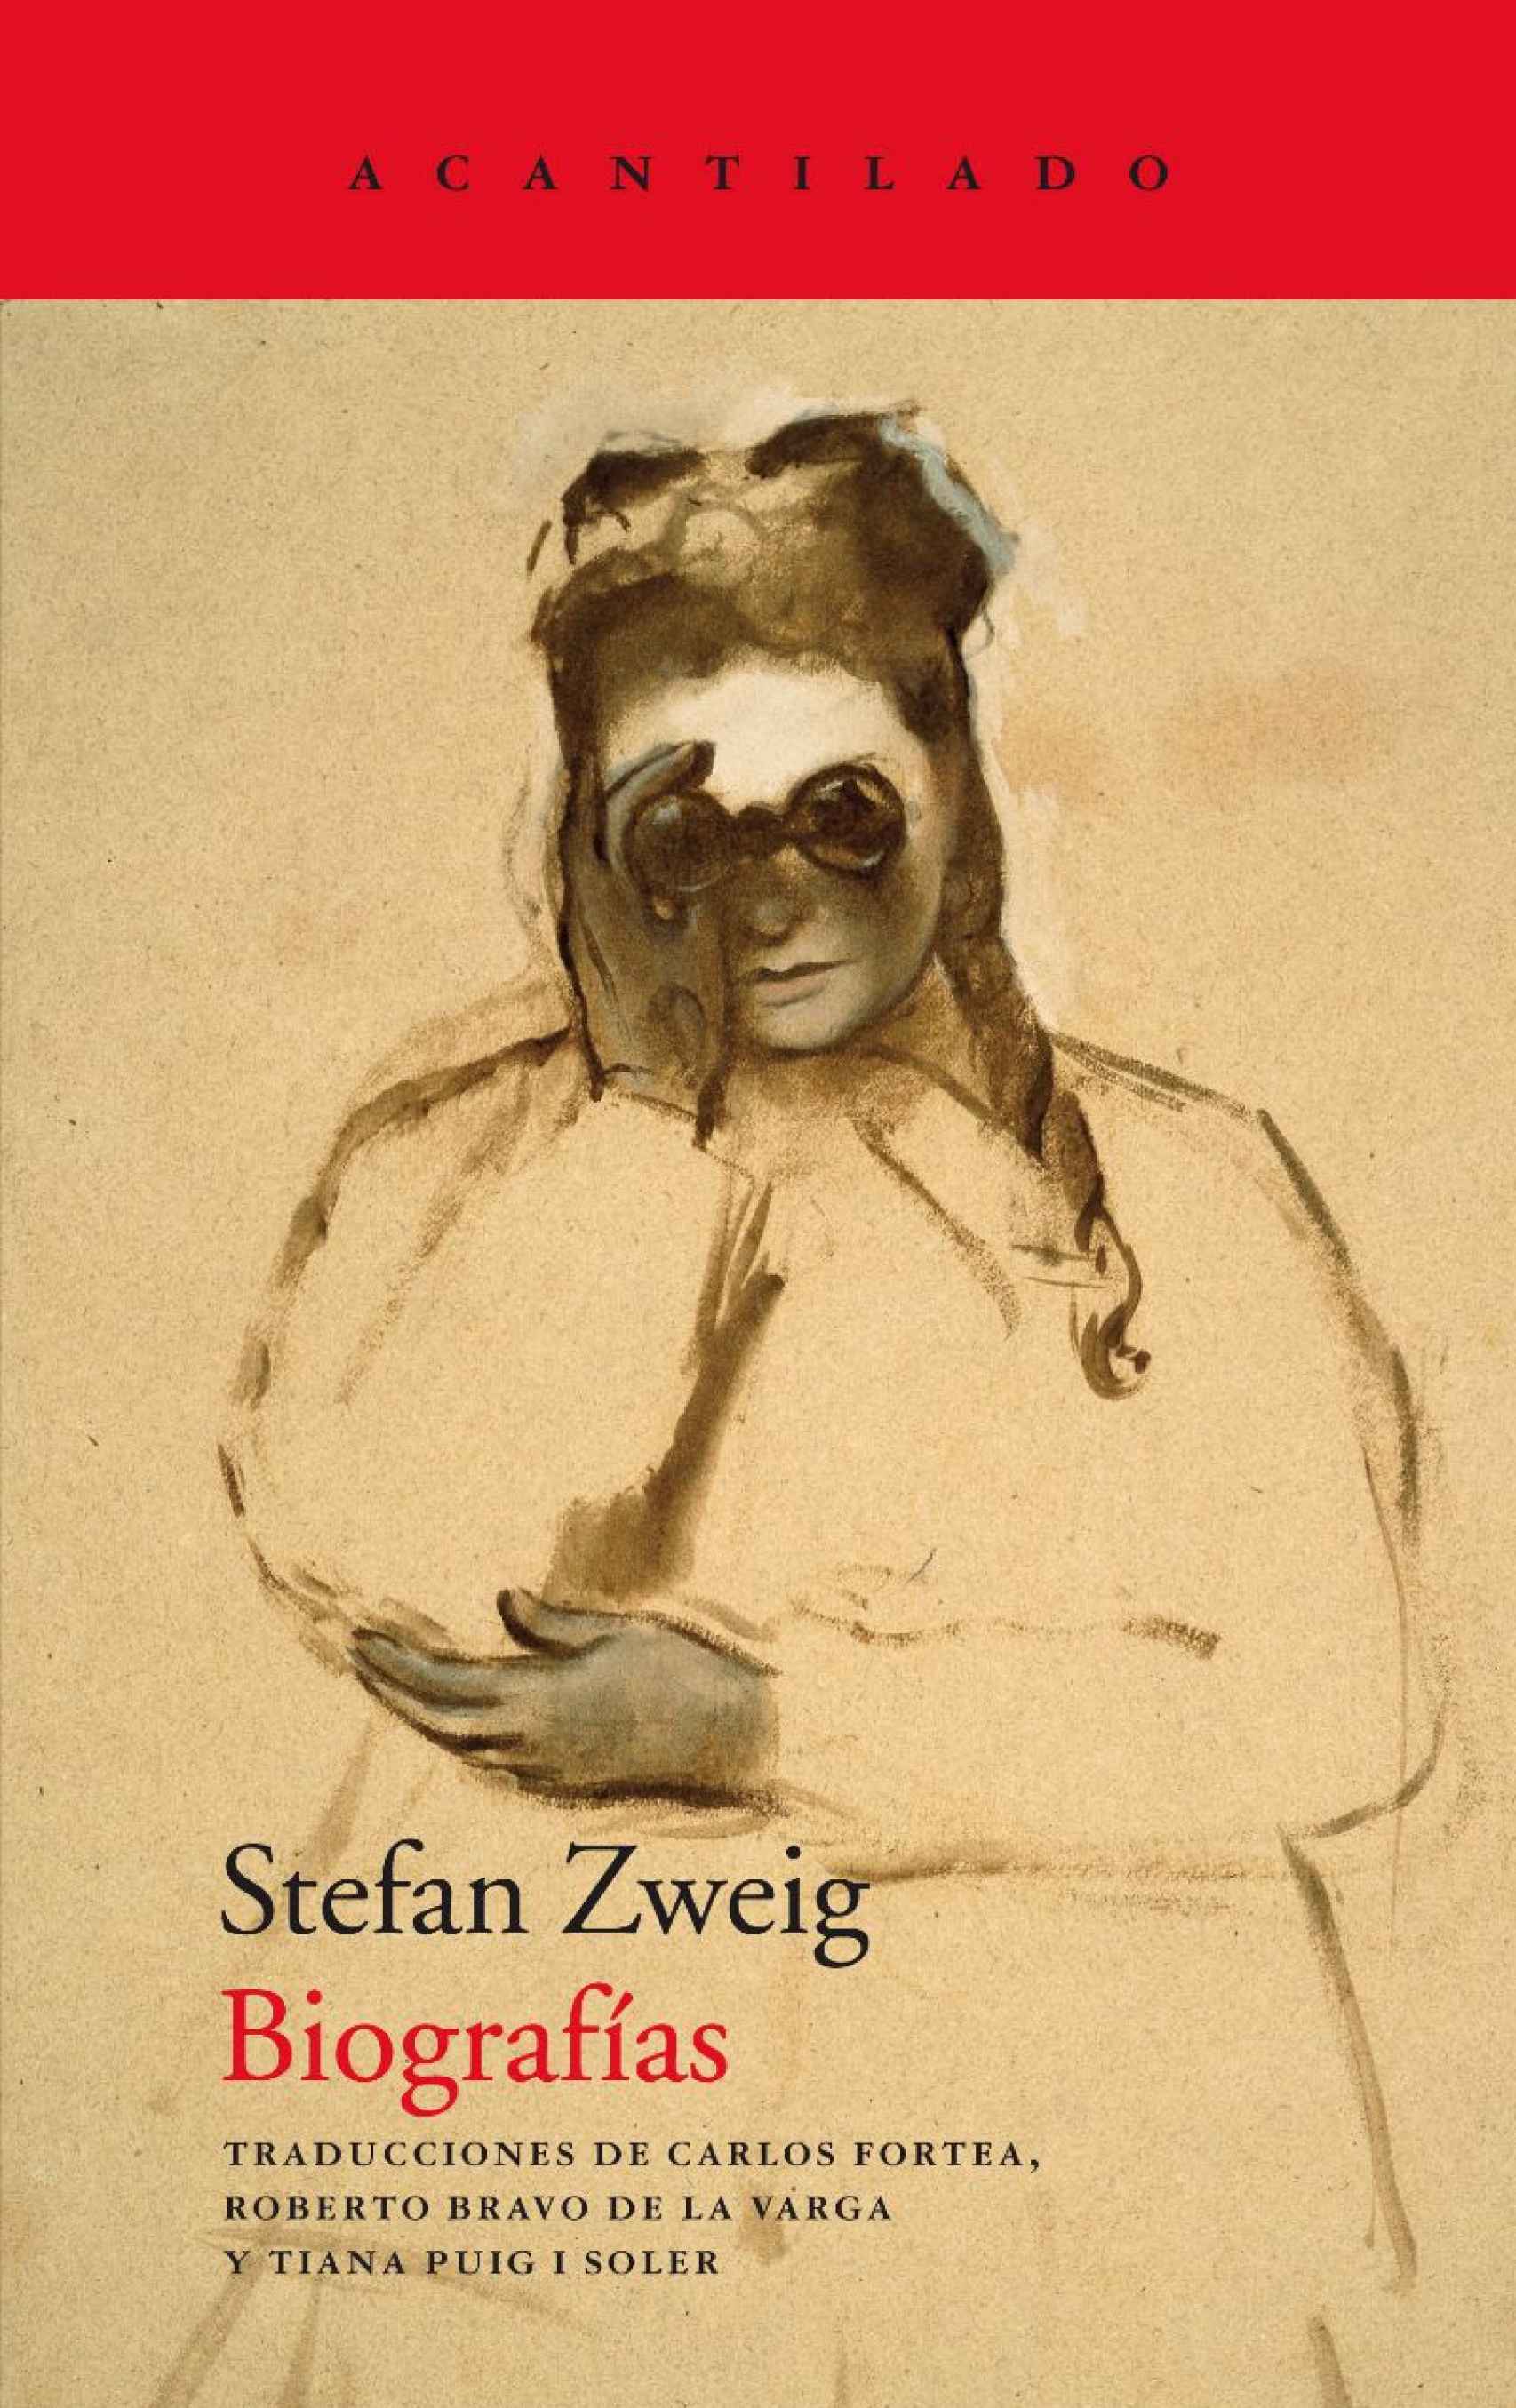 Portada de las 'Biografías de Zweig'.